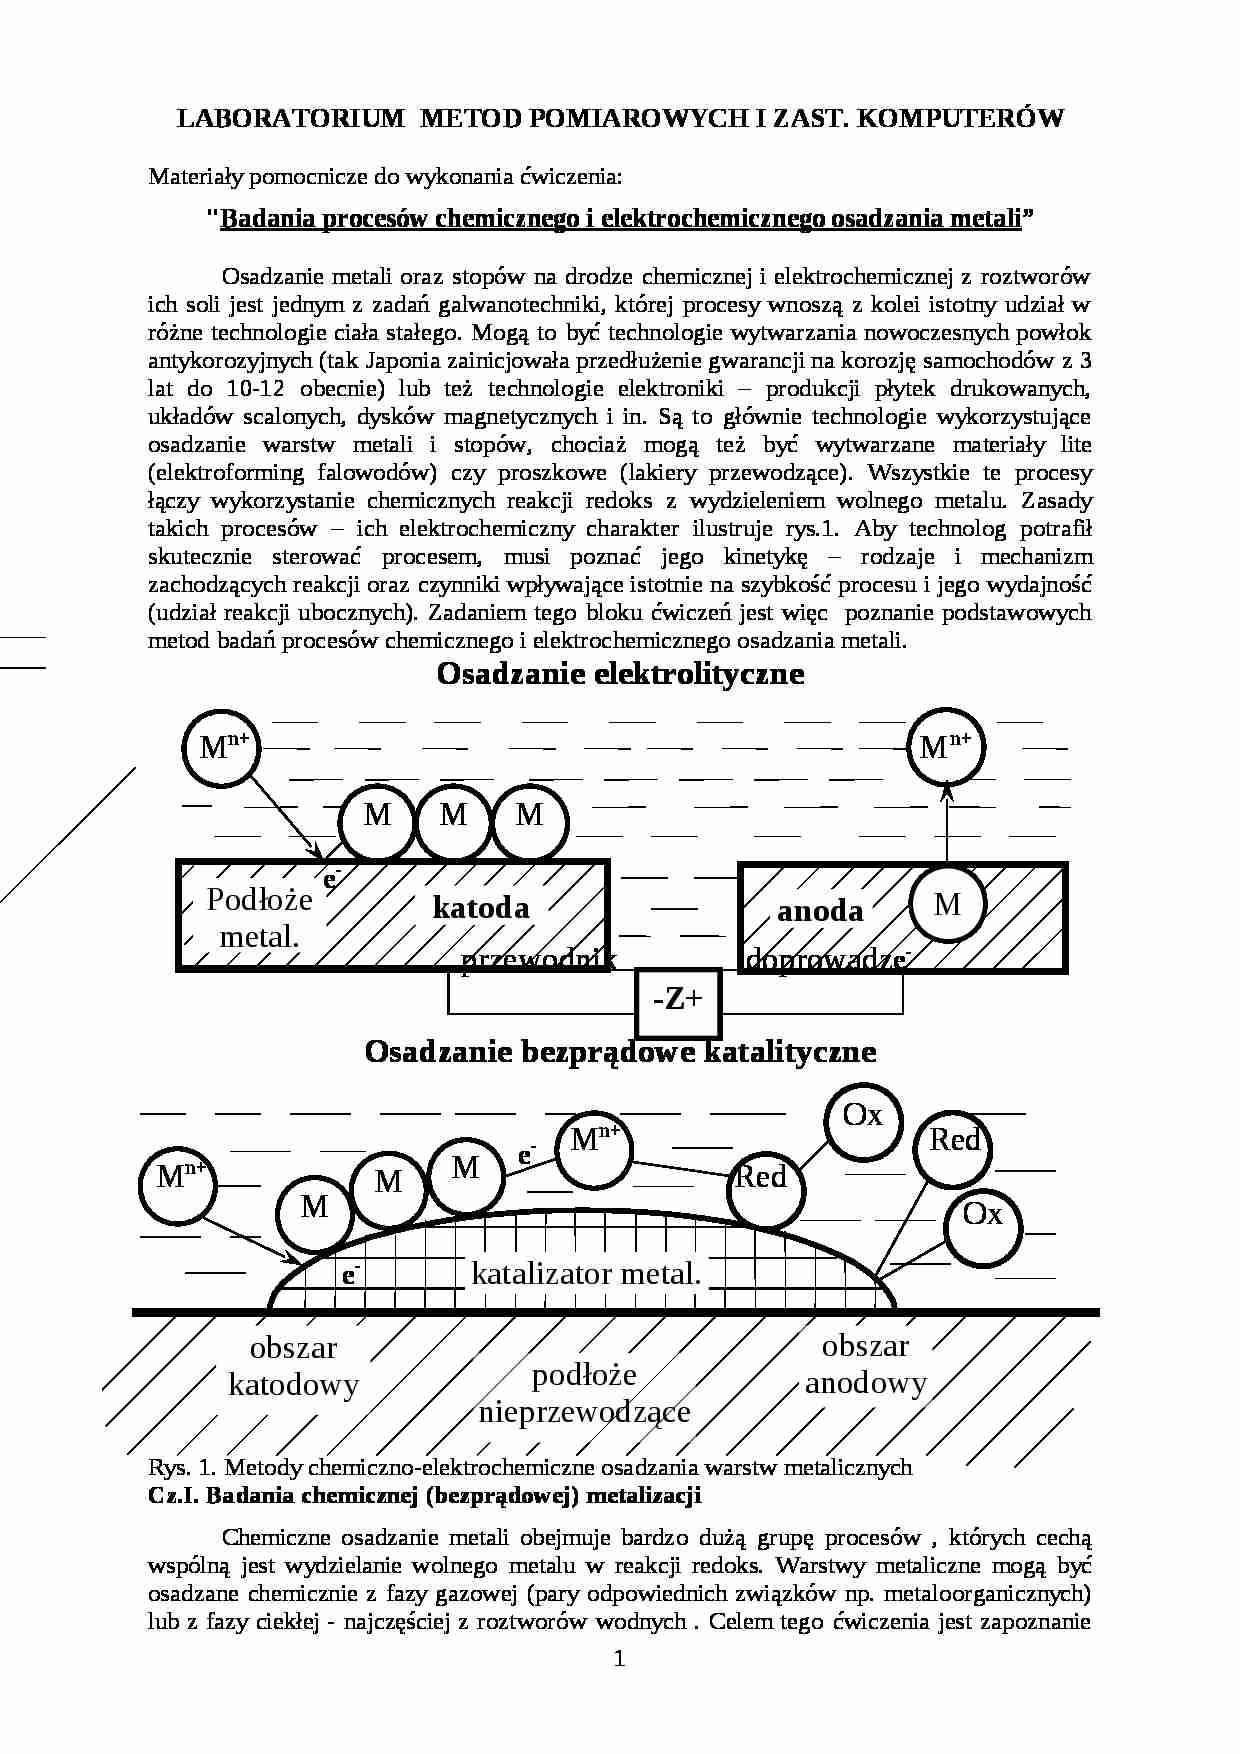 Badania procesów chemicznego i elektrochemicznego  - LABORATORIUM METOD POMIAROWYCH I ZAST. KOMPUTERÓW osadzania metali - strona 1